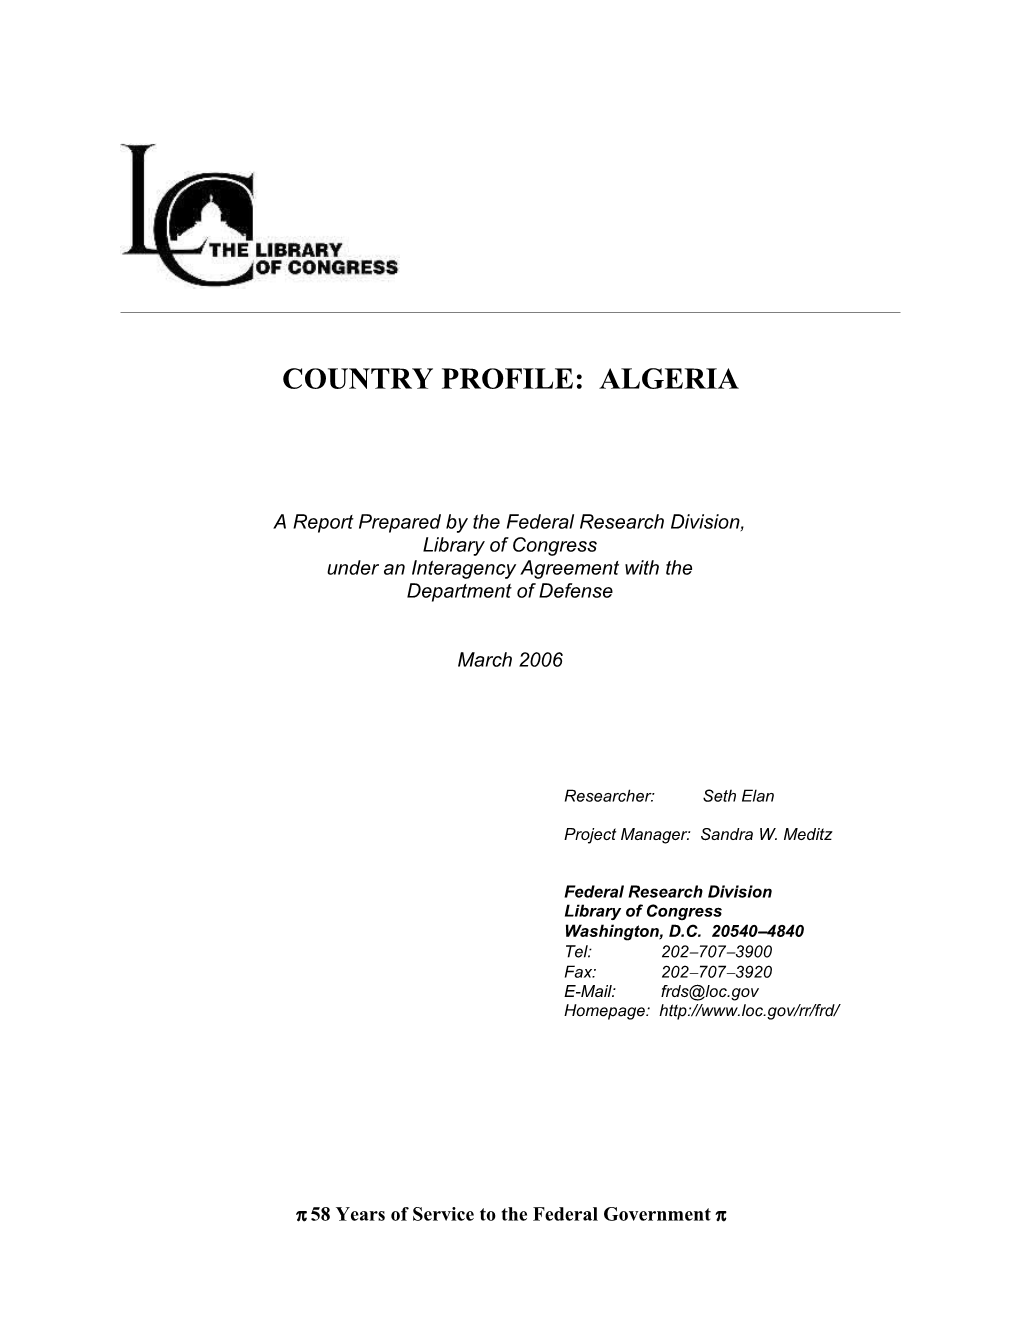 Country Profile: Algeria